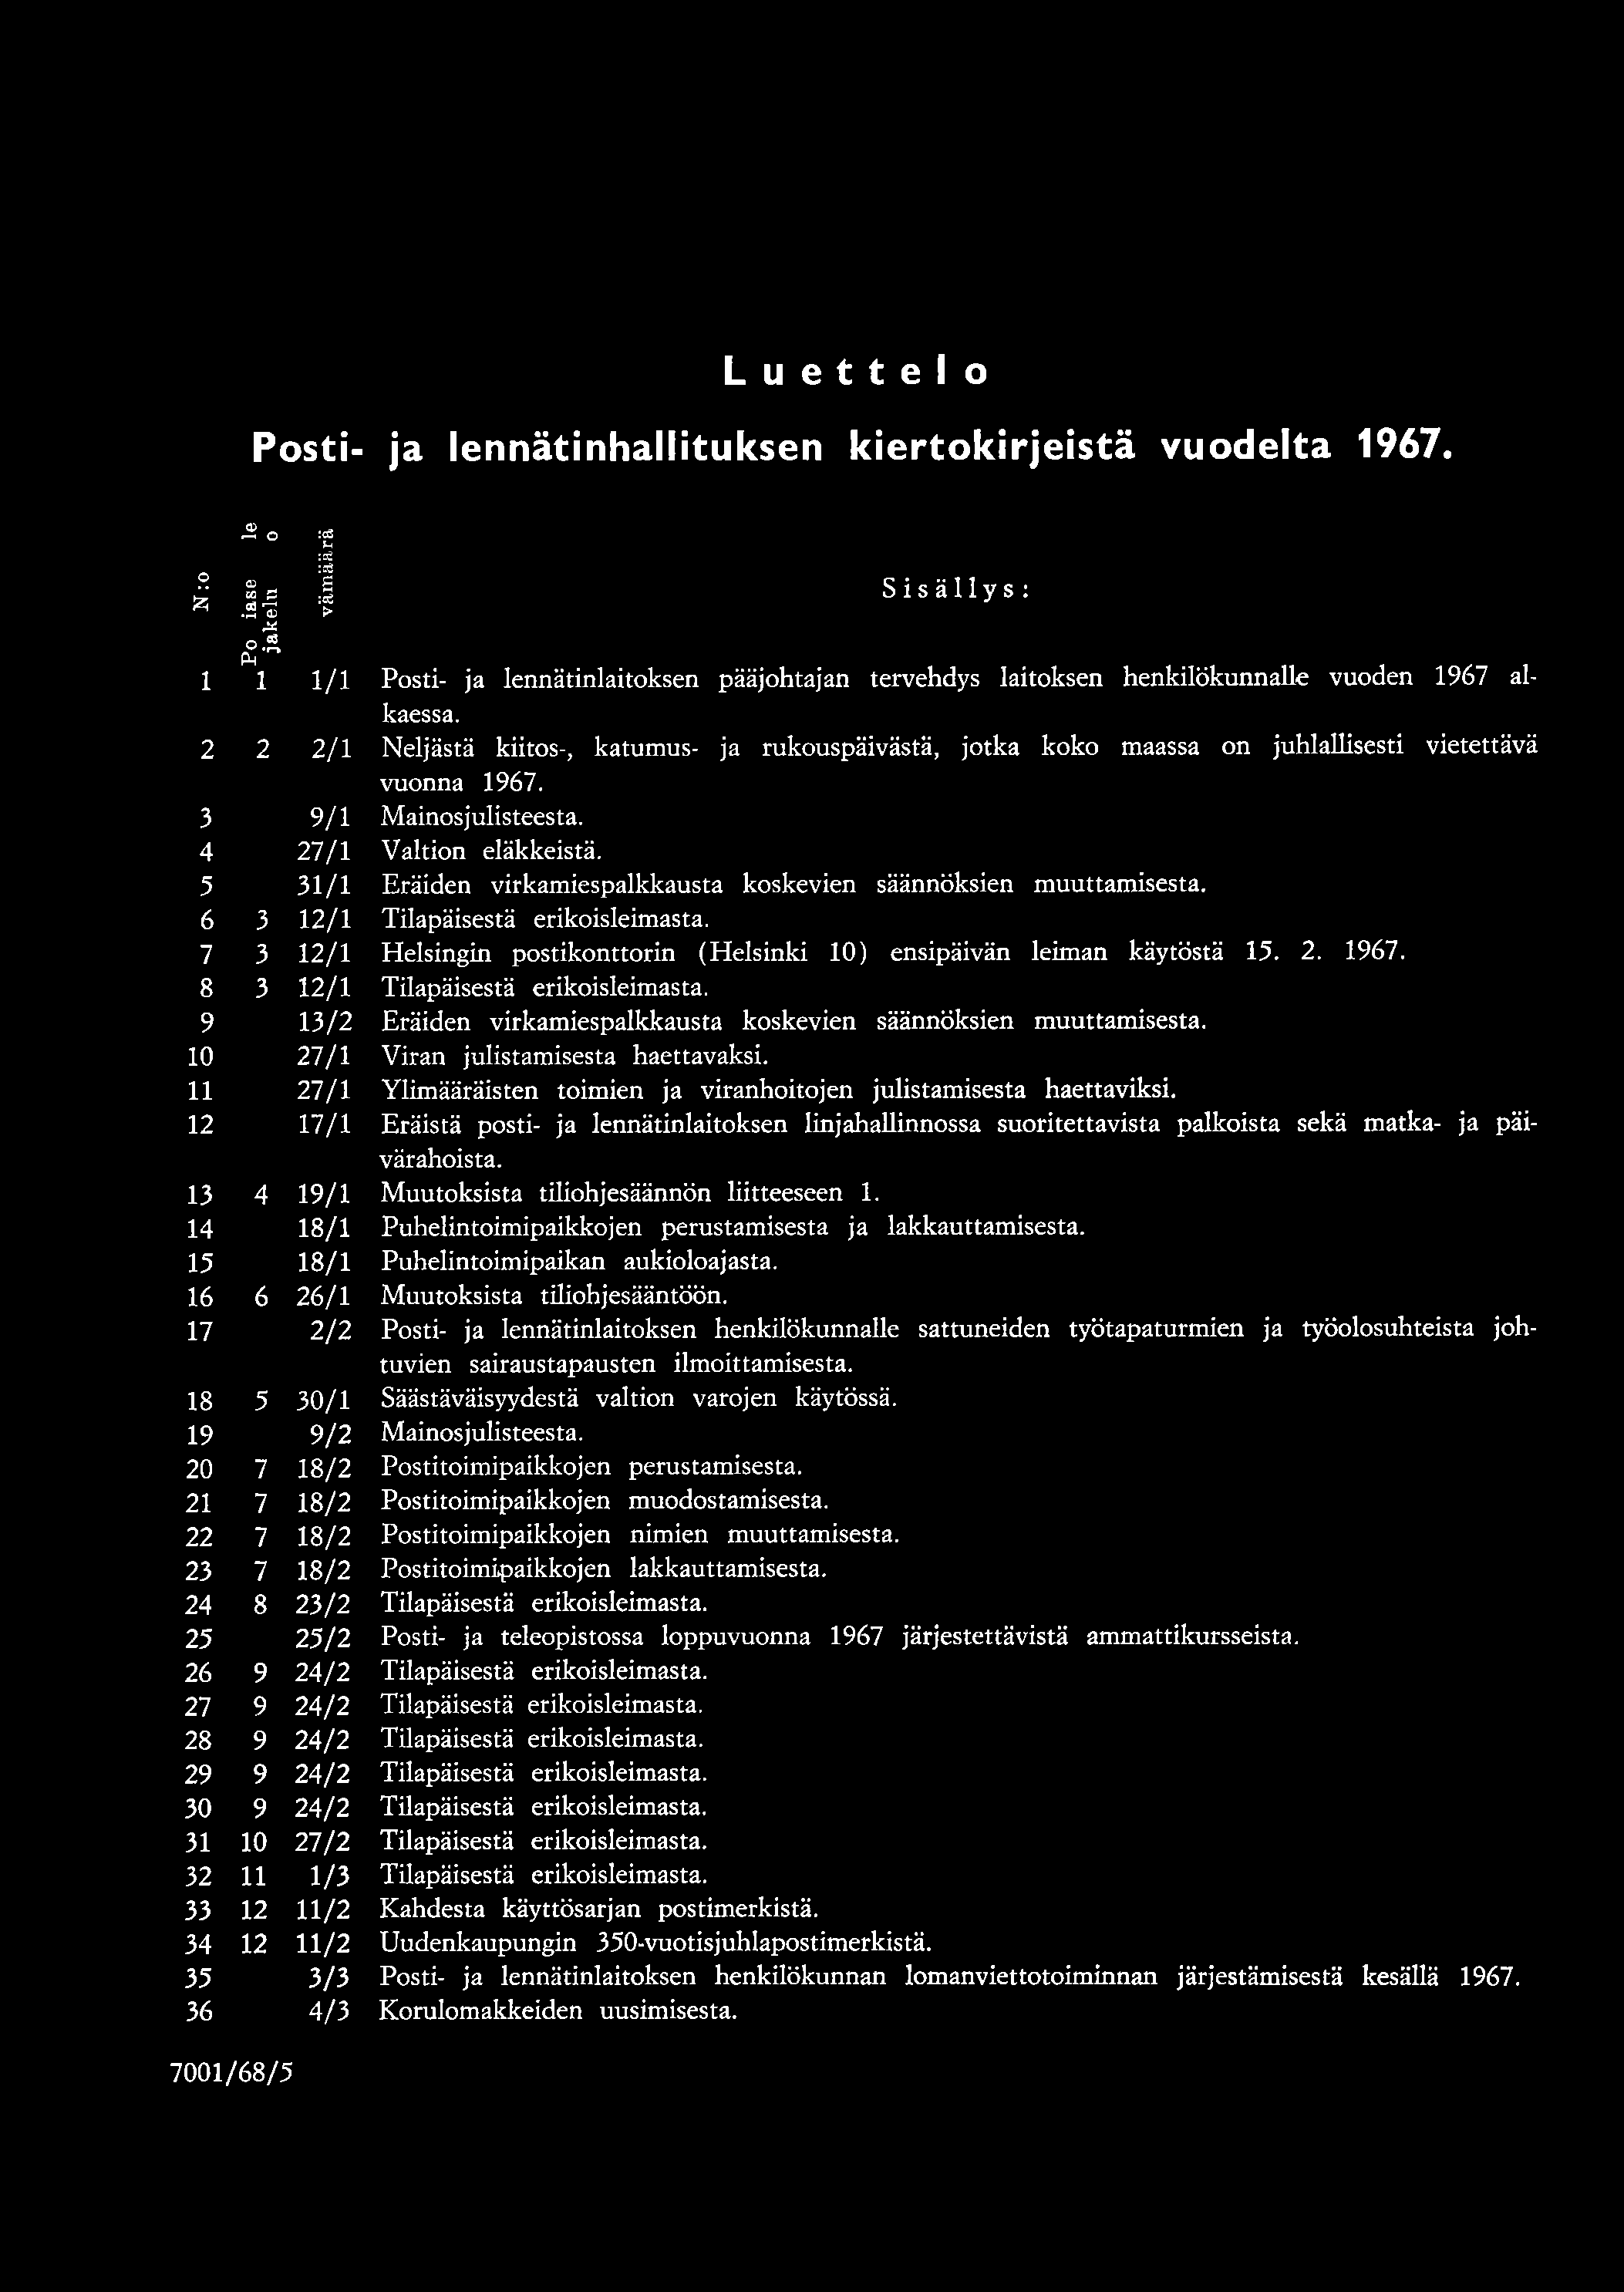 Luettelo Posti- ja lennätinhallituksen kiertokirjeistä vuodelta 1967.